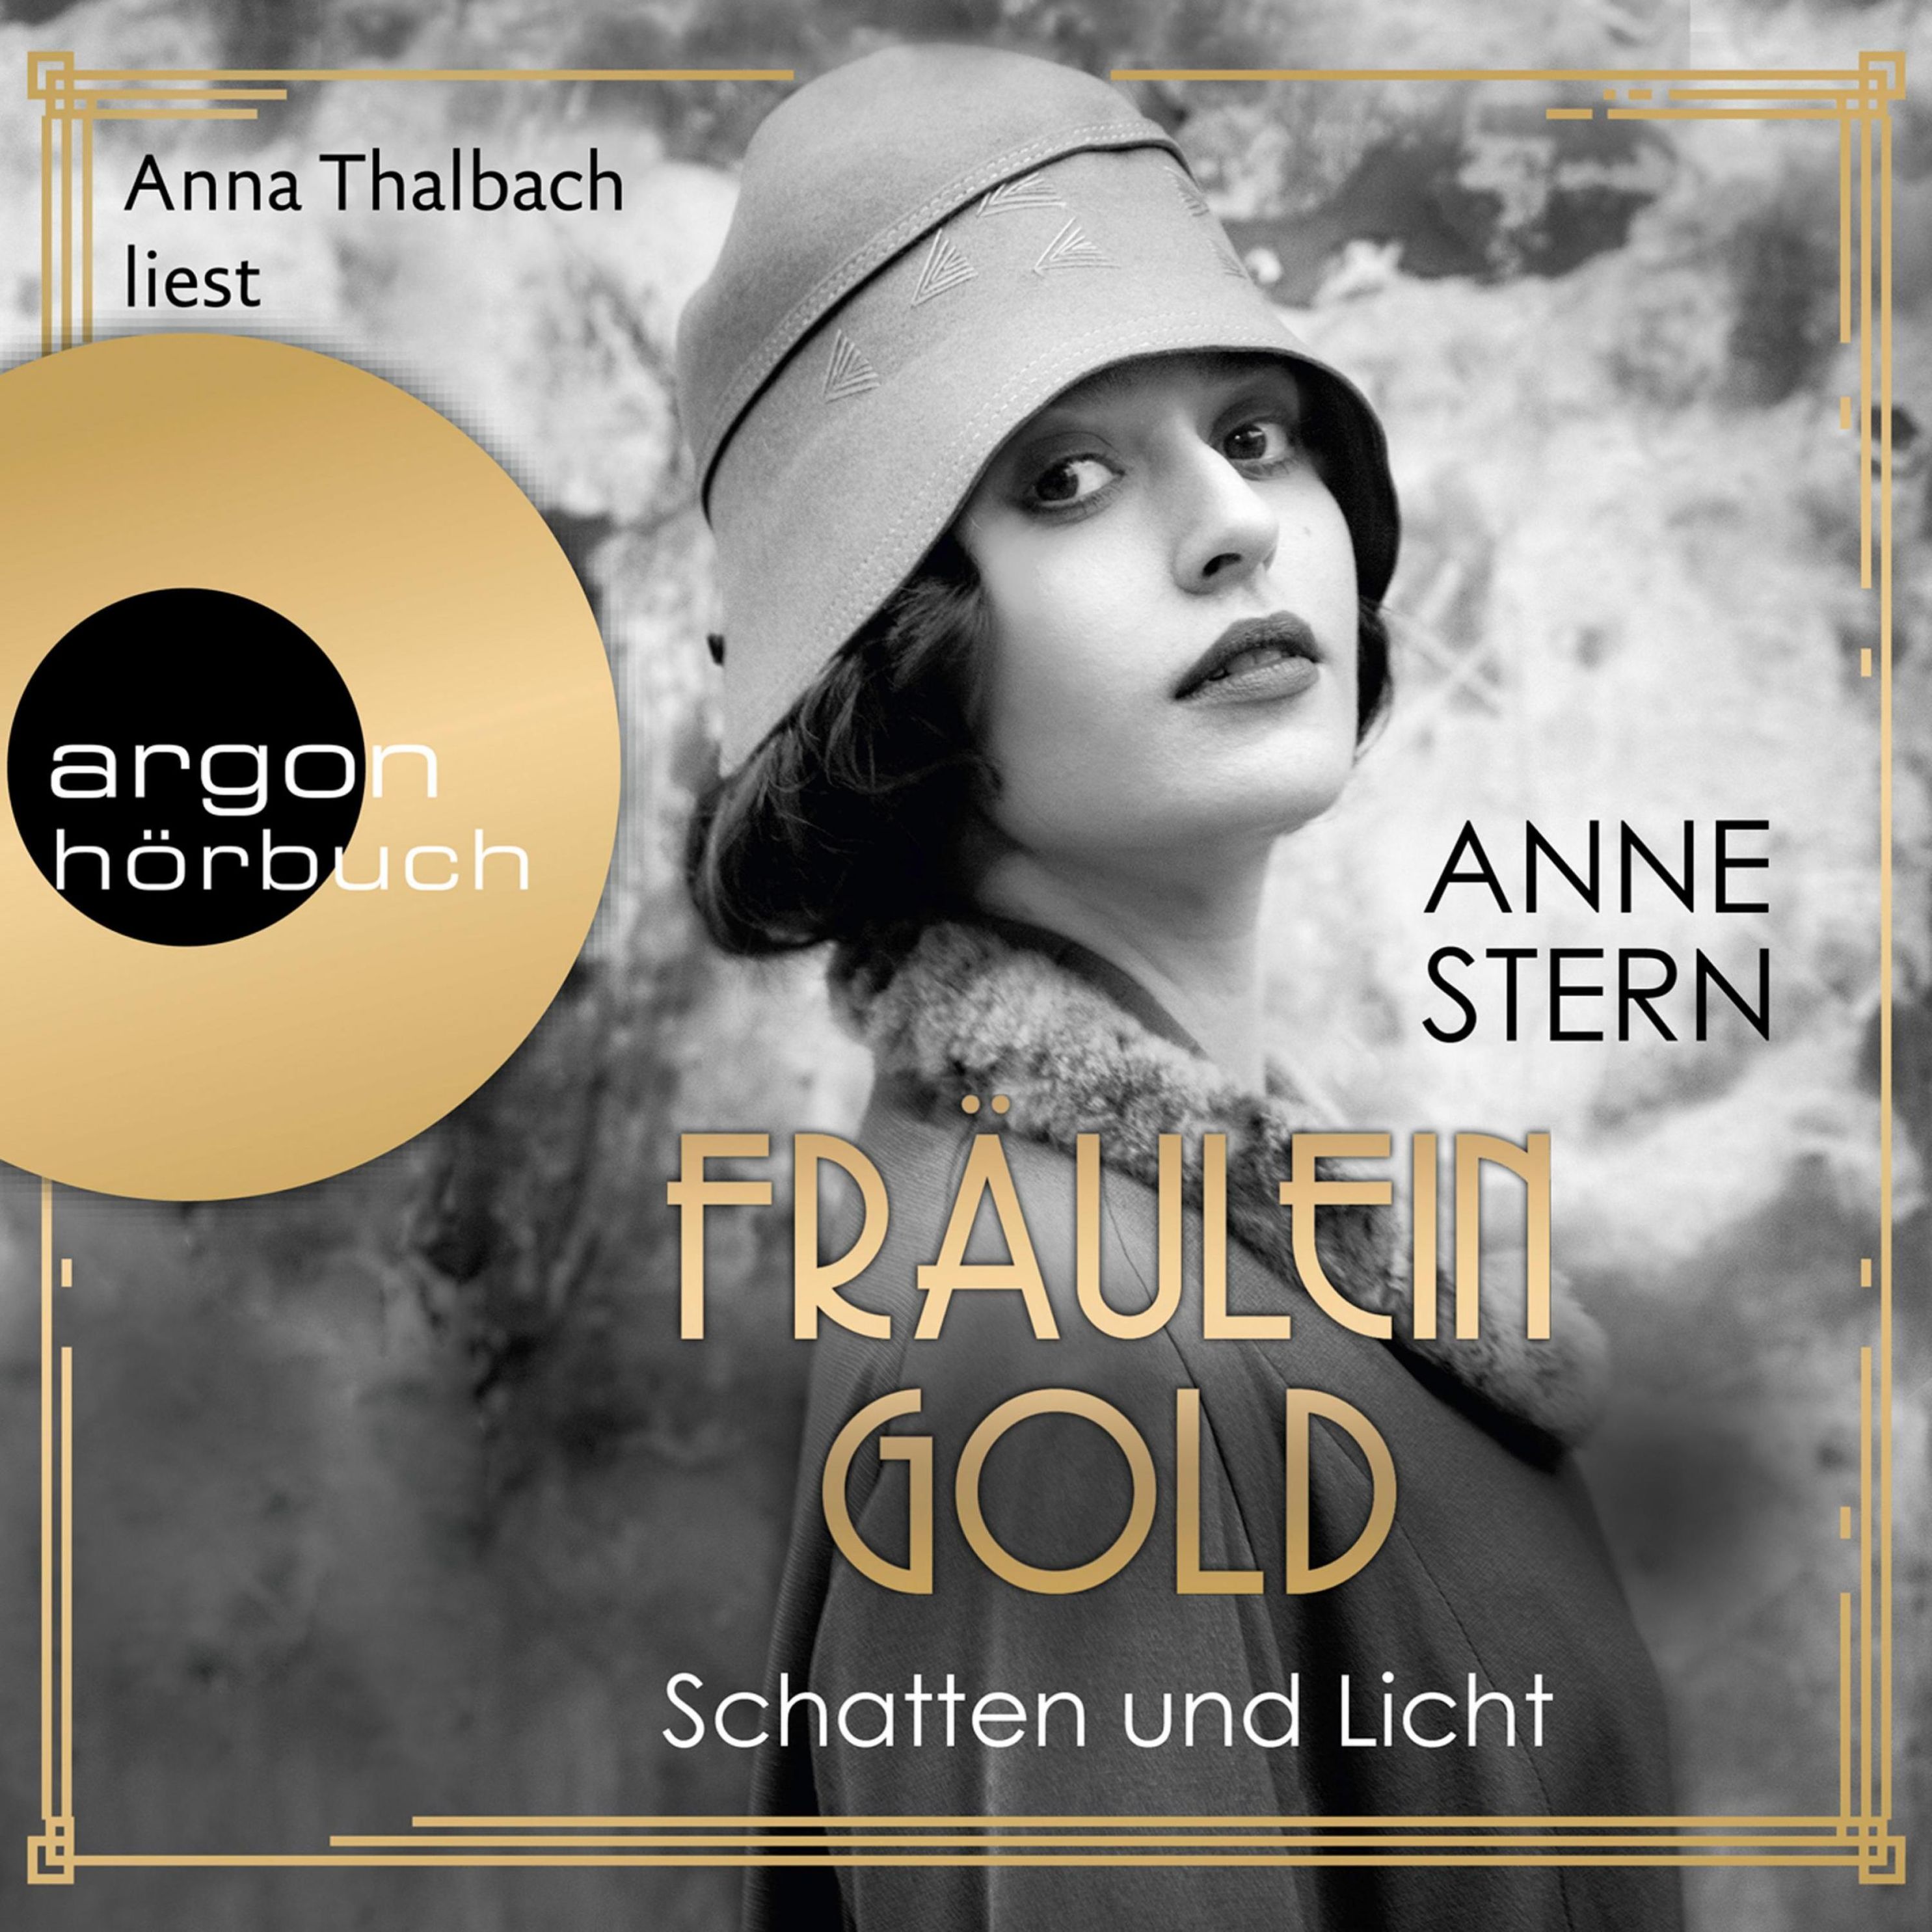 Fräulein Gold - 1 - Schatten und Licht Hörbuch Download